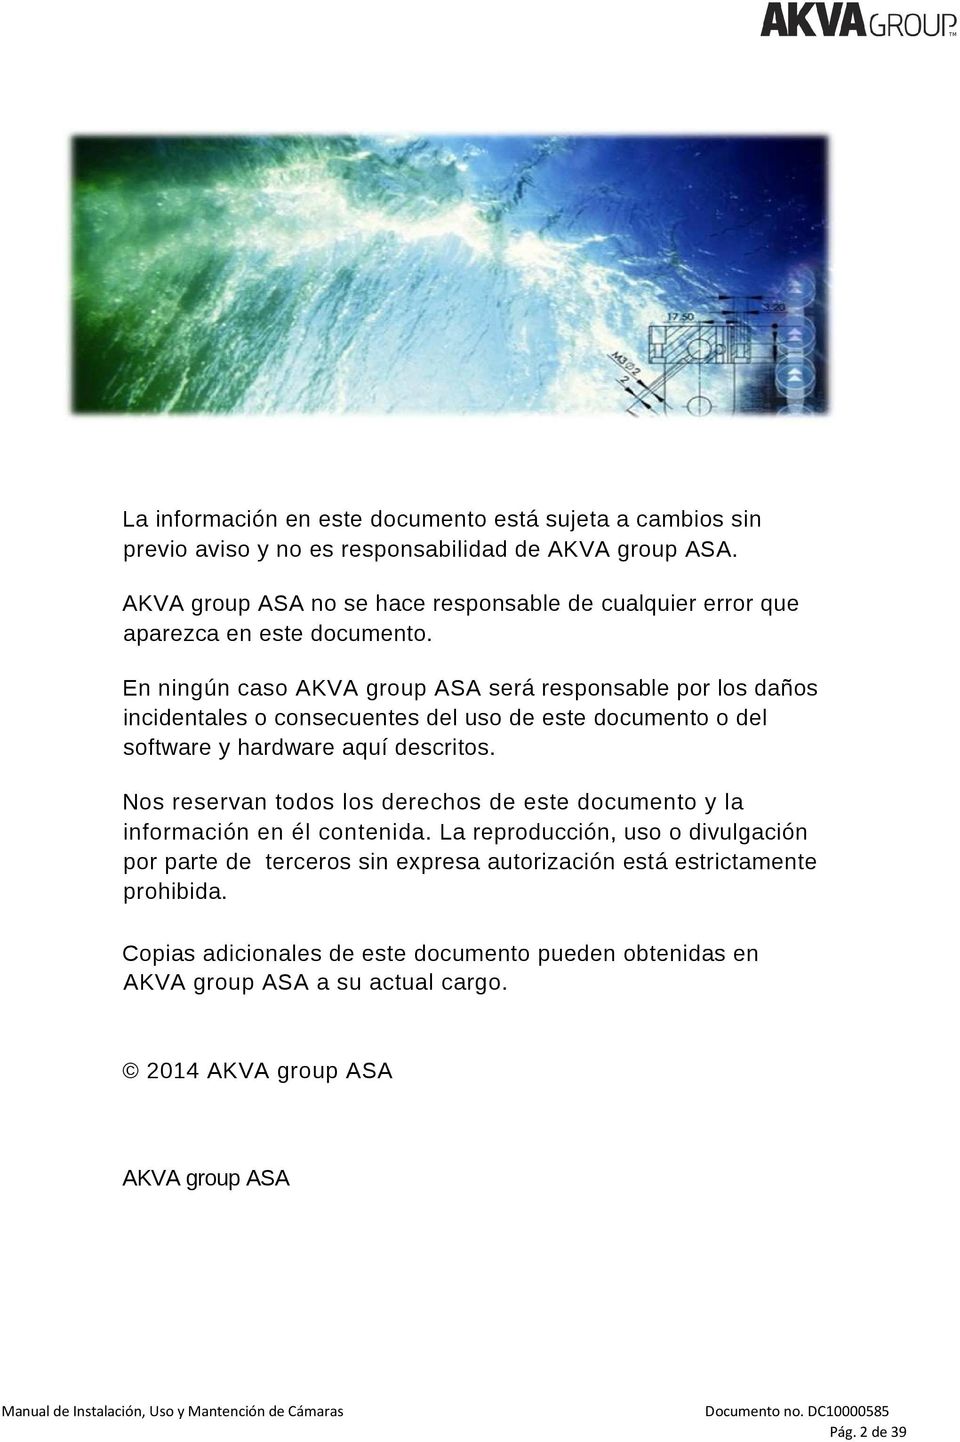 En ningún caso AKVA group ASA será responsable por los daños incidentales o consecuentes del uso de este documento o del software y hardware aquí descritos.